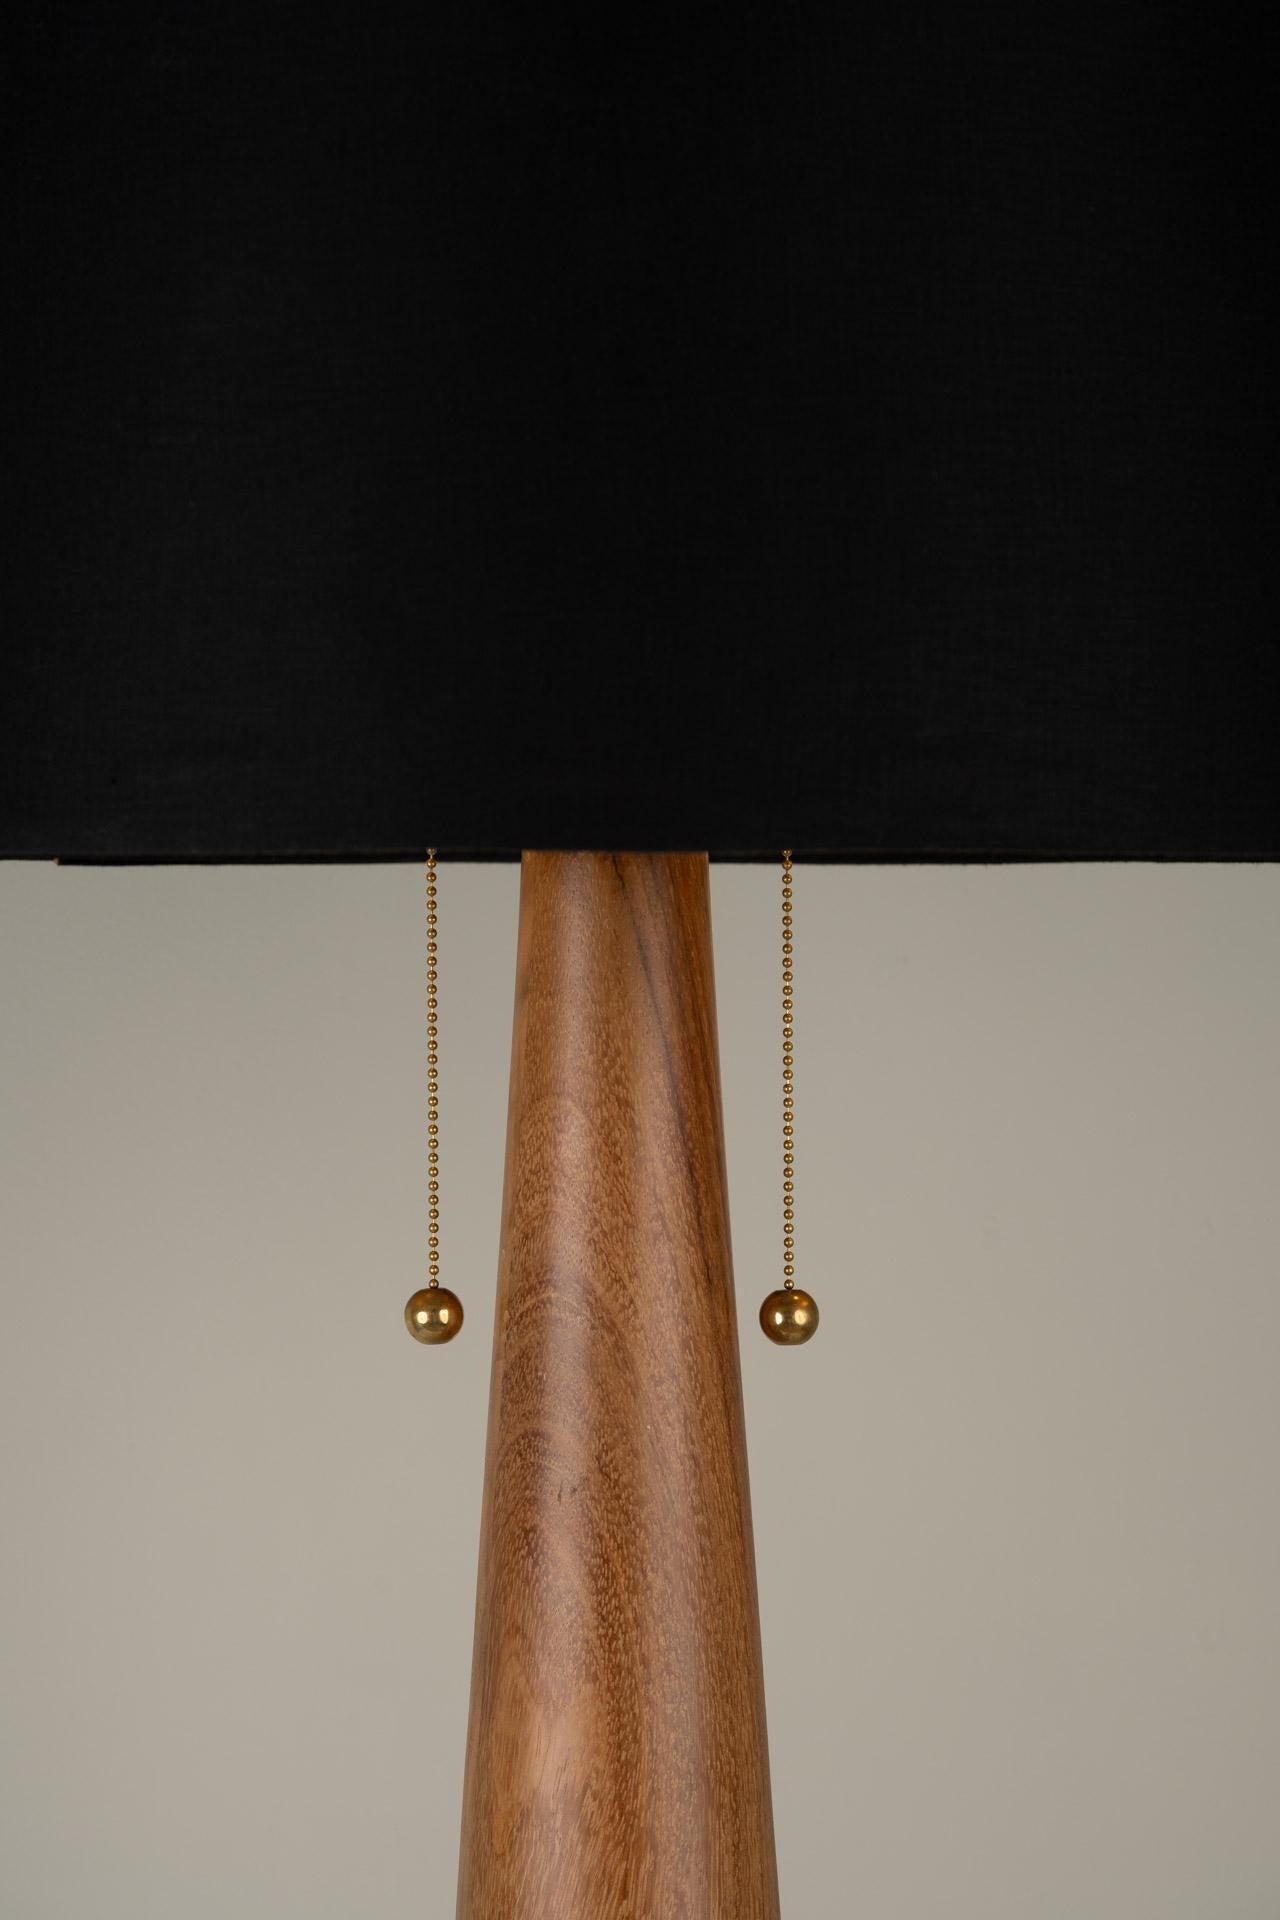 Le lampadaire APOLO a été conçu pour la collection Atomic de l'artiste mexicaine Isabel Moncada.

L'obélisque porte le nom de la célèbre divinité grecque à l'arc et aux flèches. L'extrémité de cette lampe pointe vers le ciel, son style et sa forme